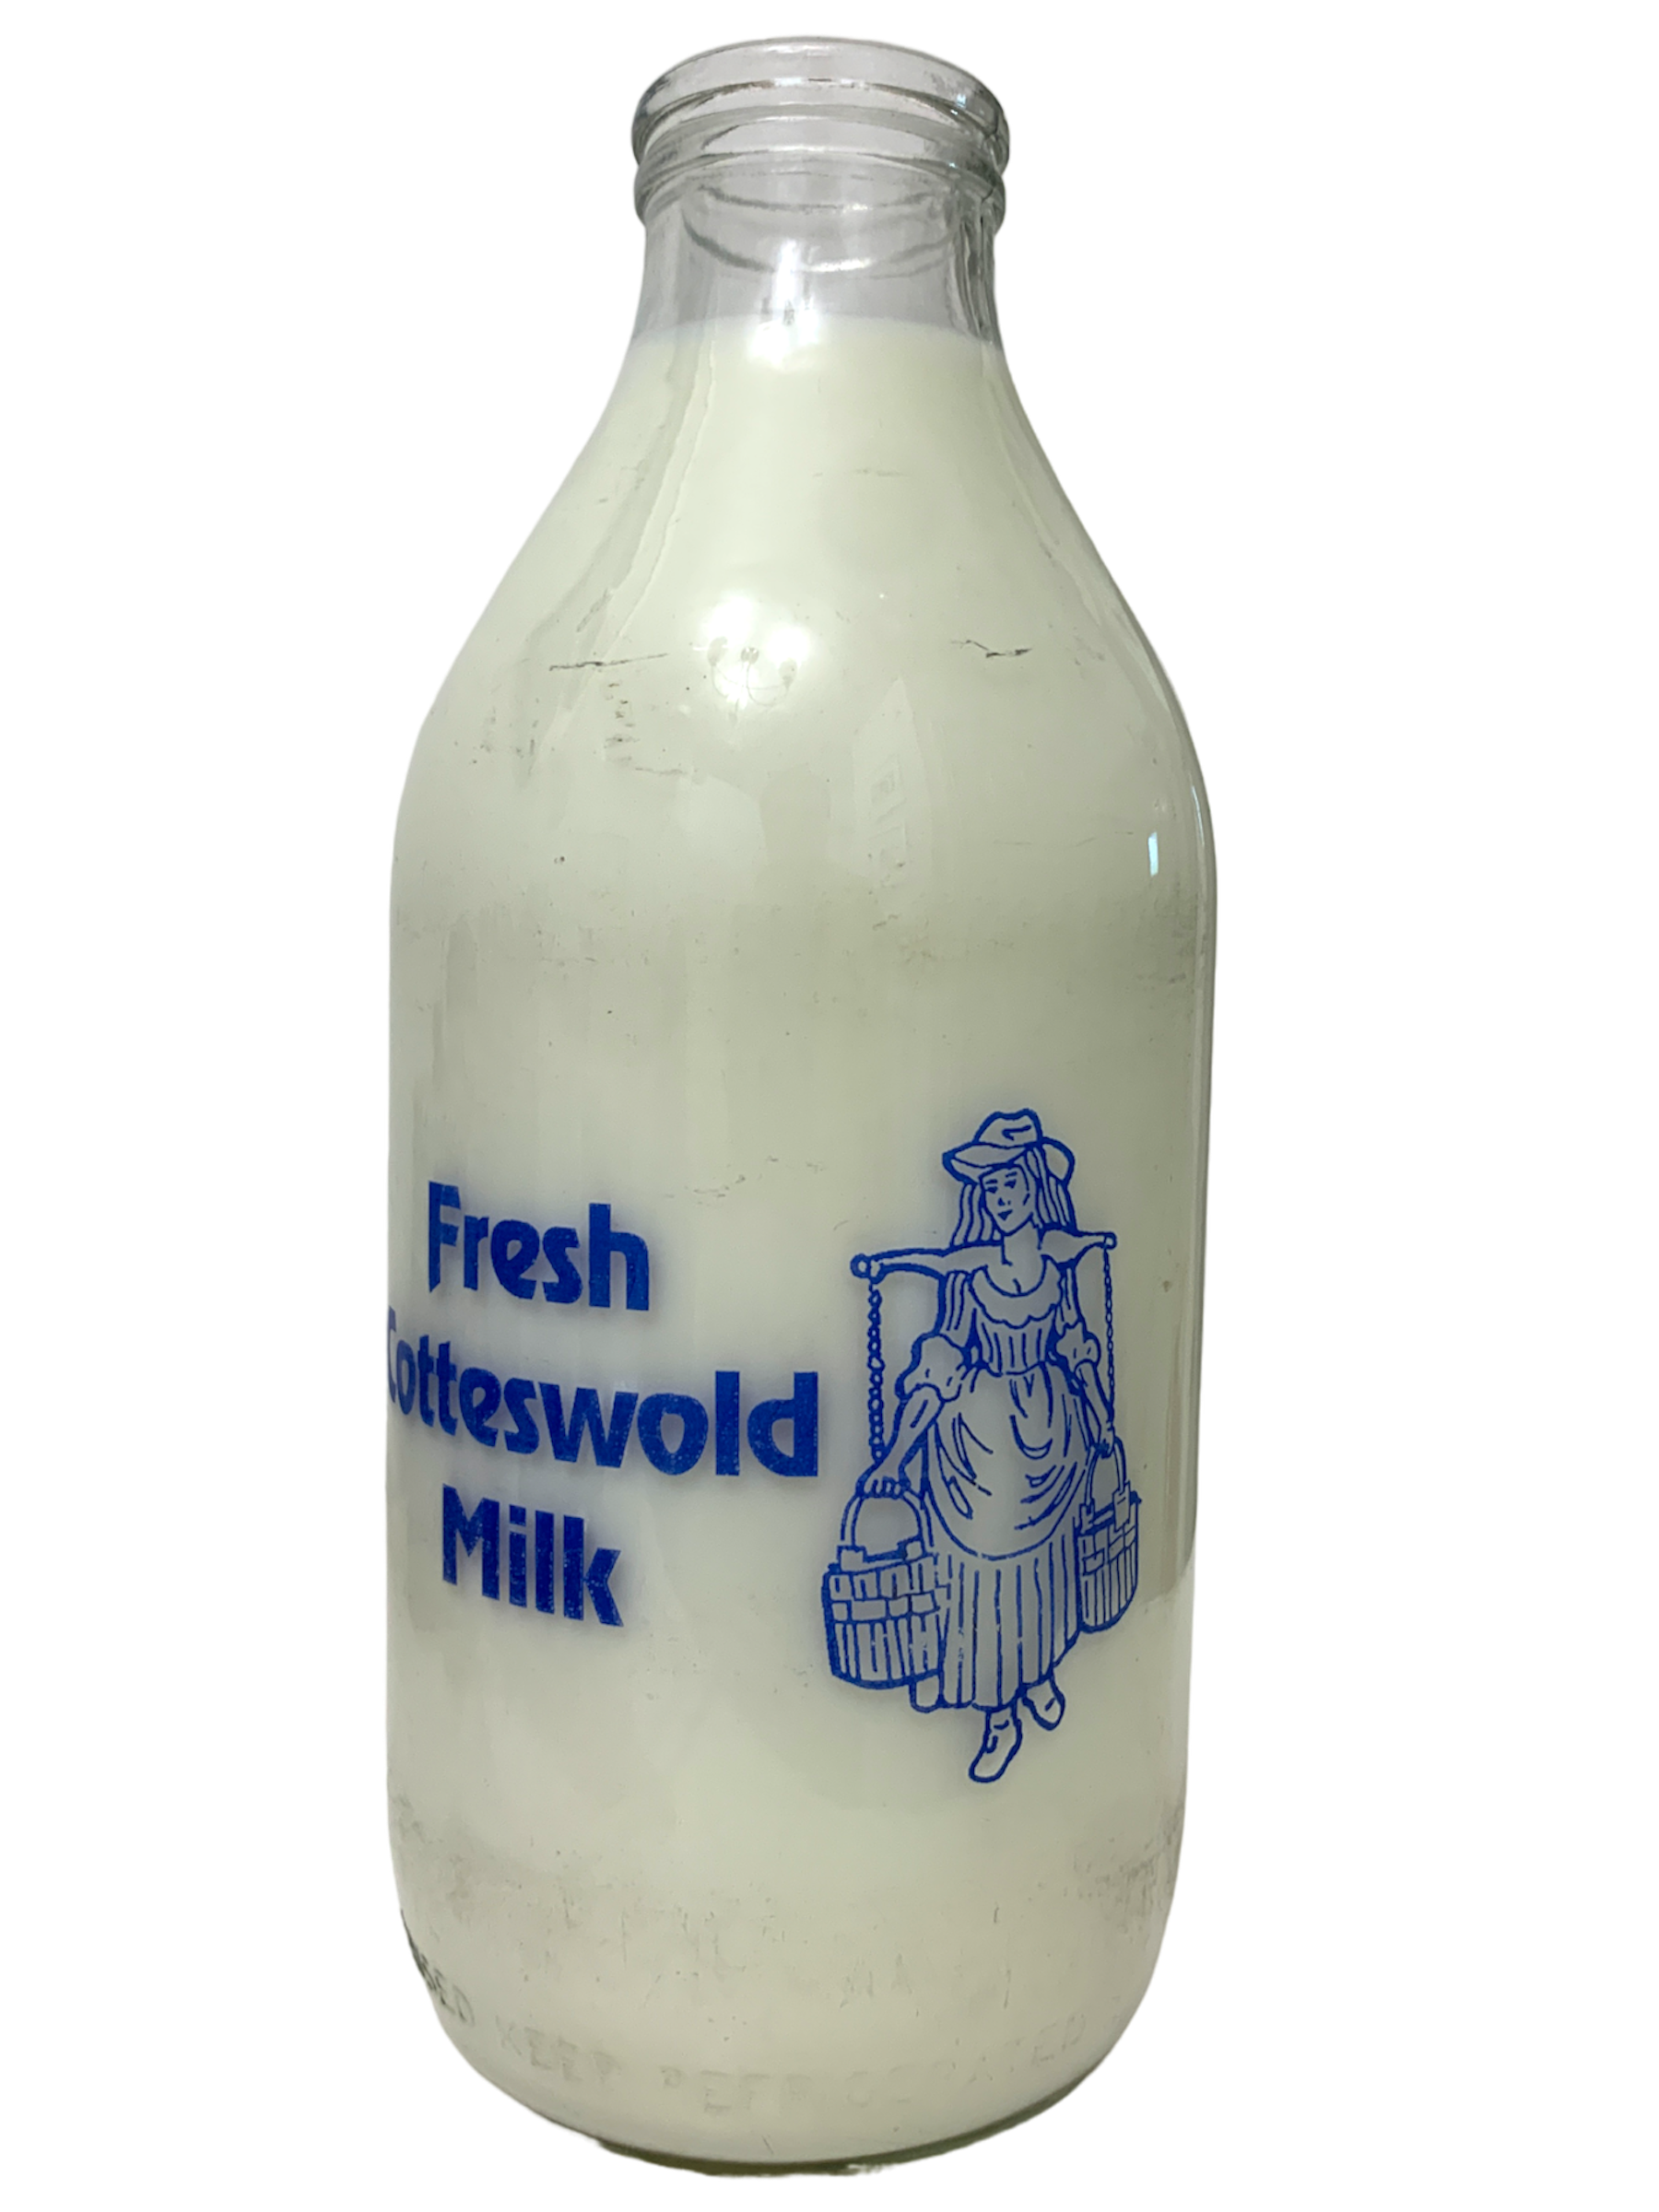 Fresh Cotteswold Milk - www.Kelis.info #KelisTheBottleBank